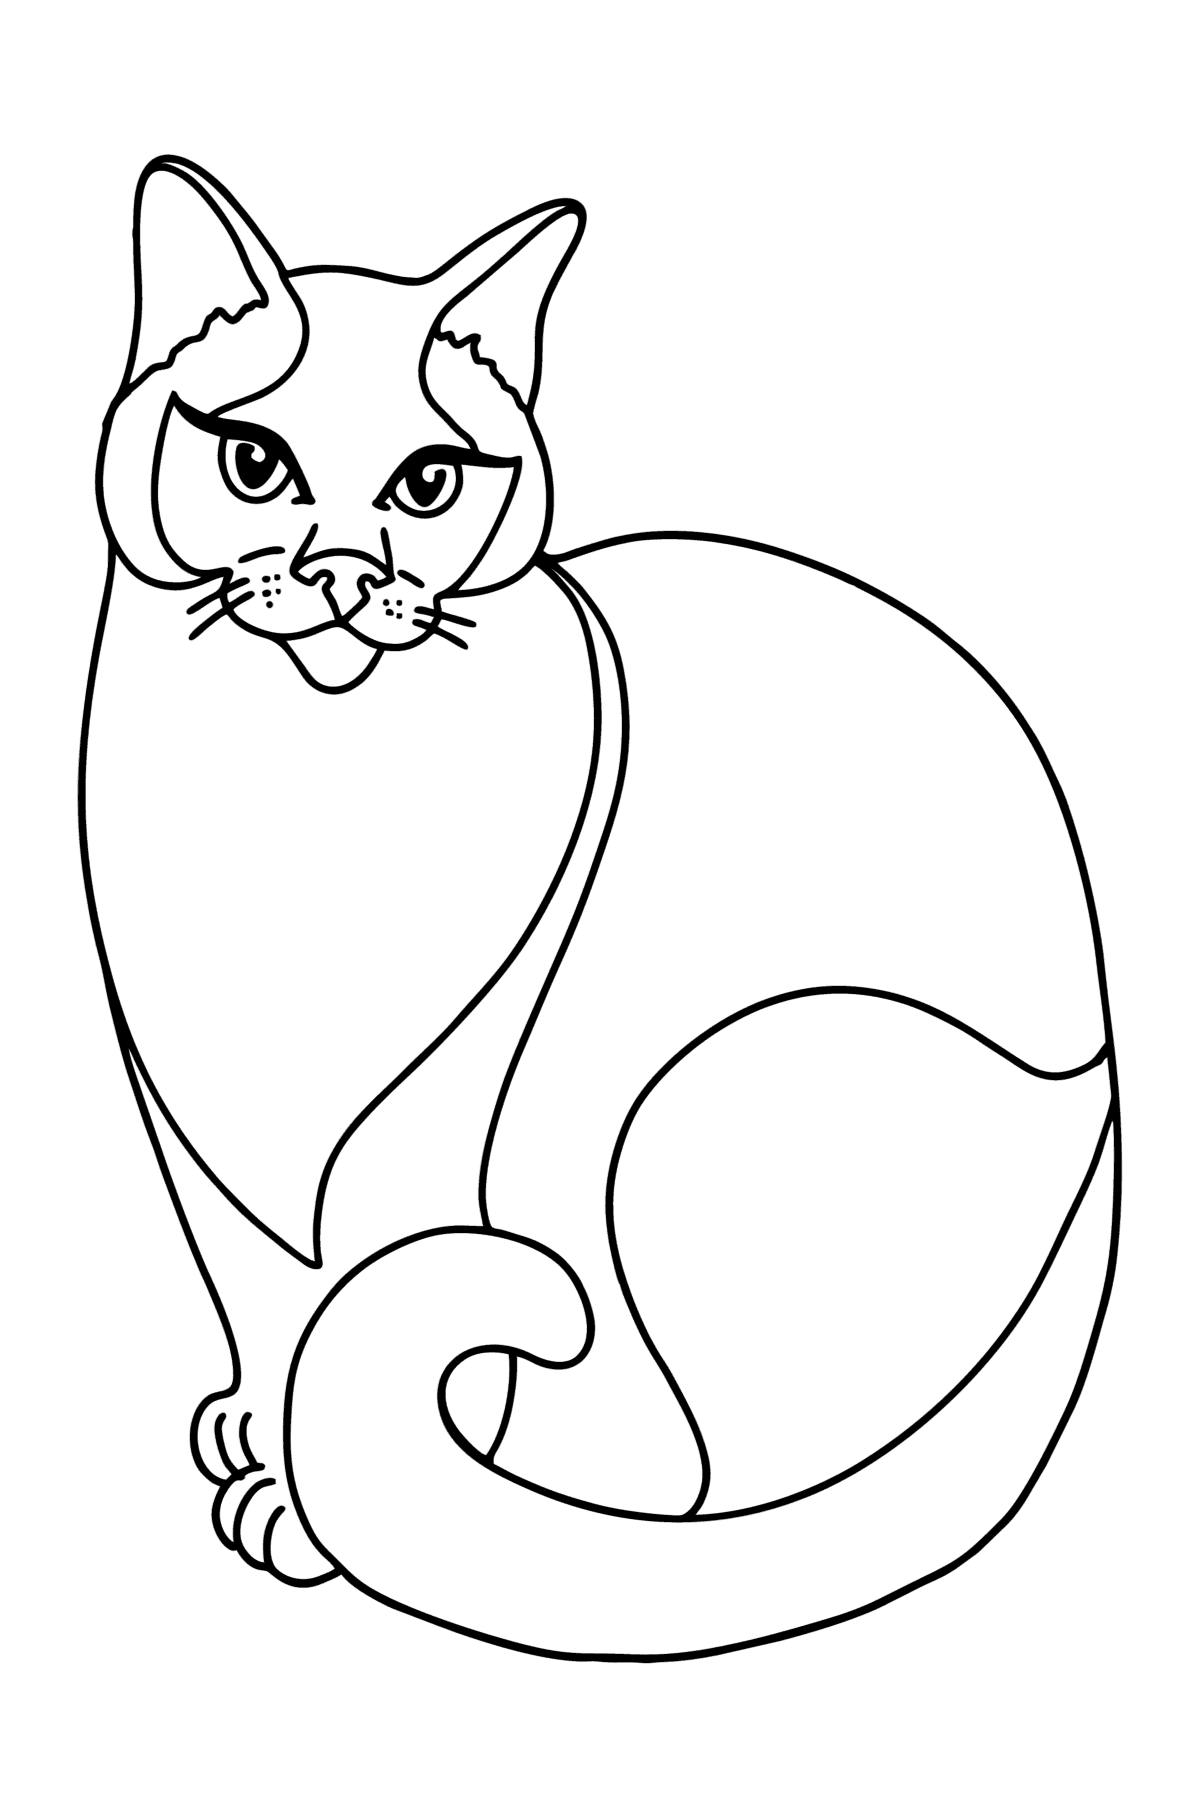 Kolorowanka Kot syjamski - Kolorowanki dla dzieci